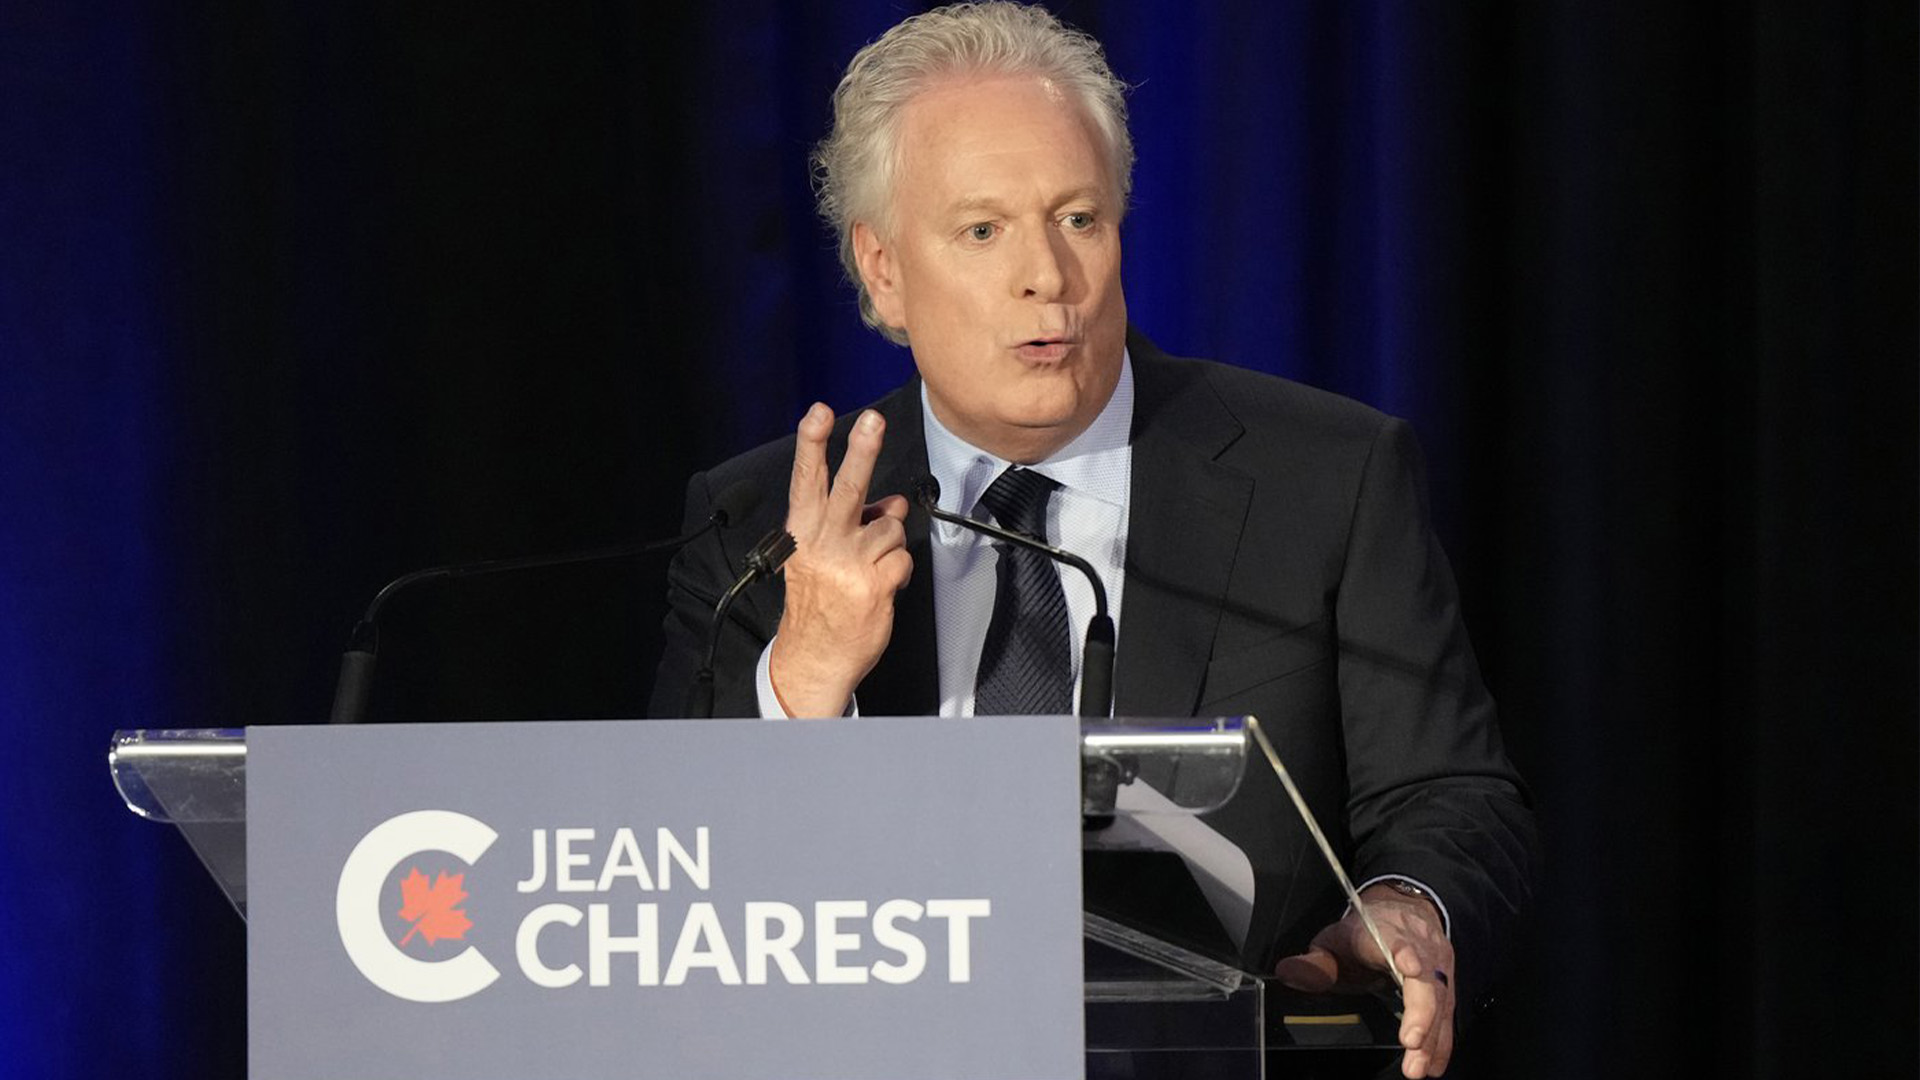 Jean Charest prend part au débat à la direction du Parti conservateur du Canada en français à Laval, au Québec, le mercredi 25 mai 2022.